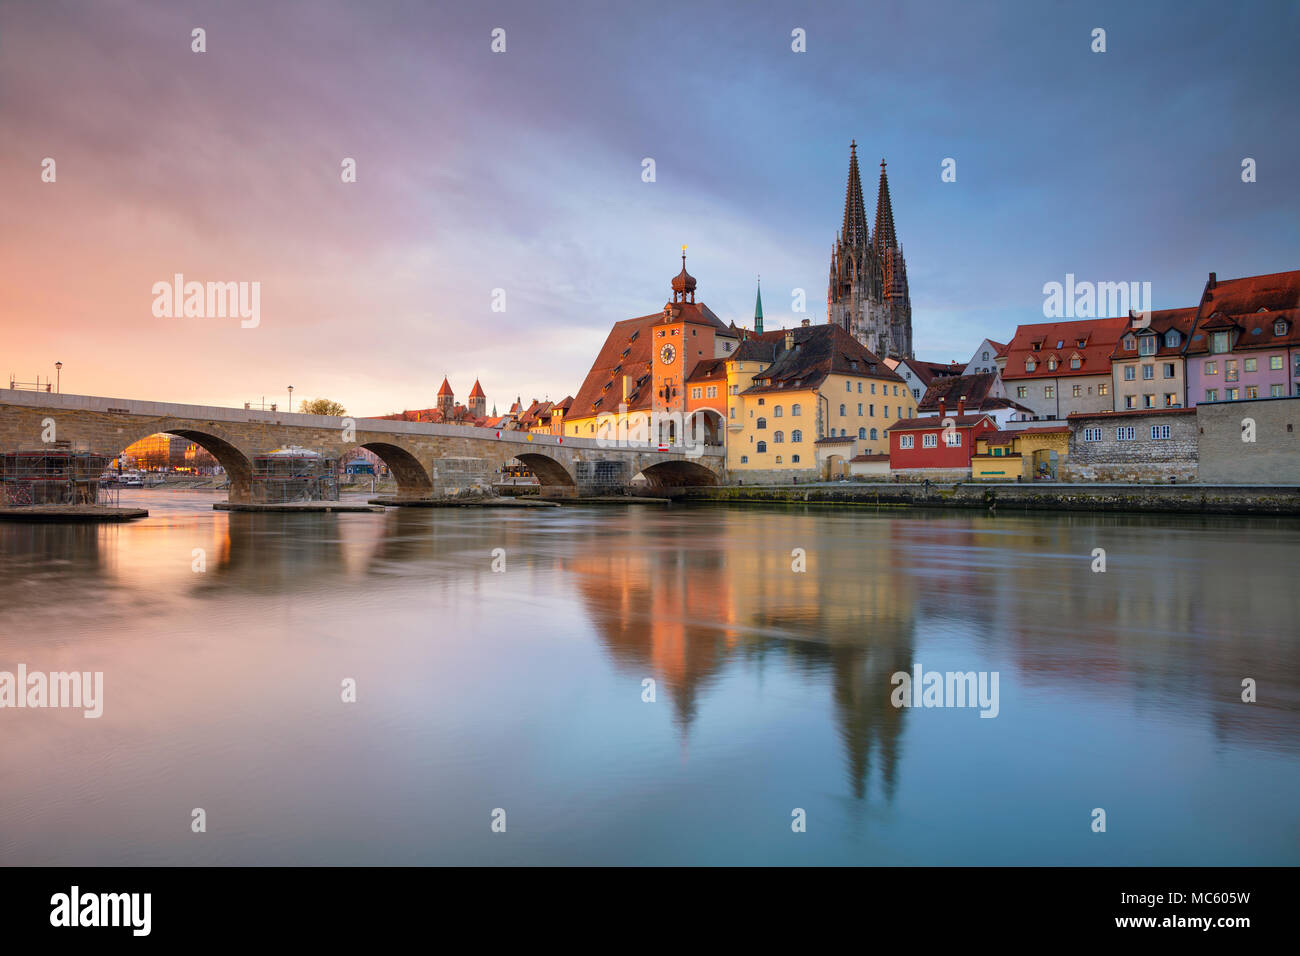 Regensburg. Cityscape image de Regensburg, Allemagne au printemps le lever du soleil. Banque D'Images